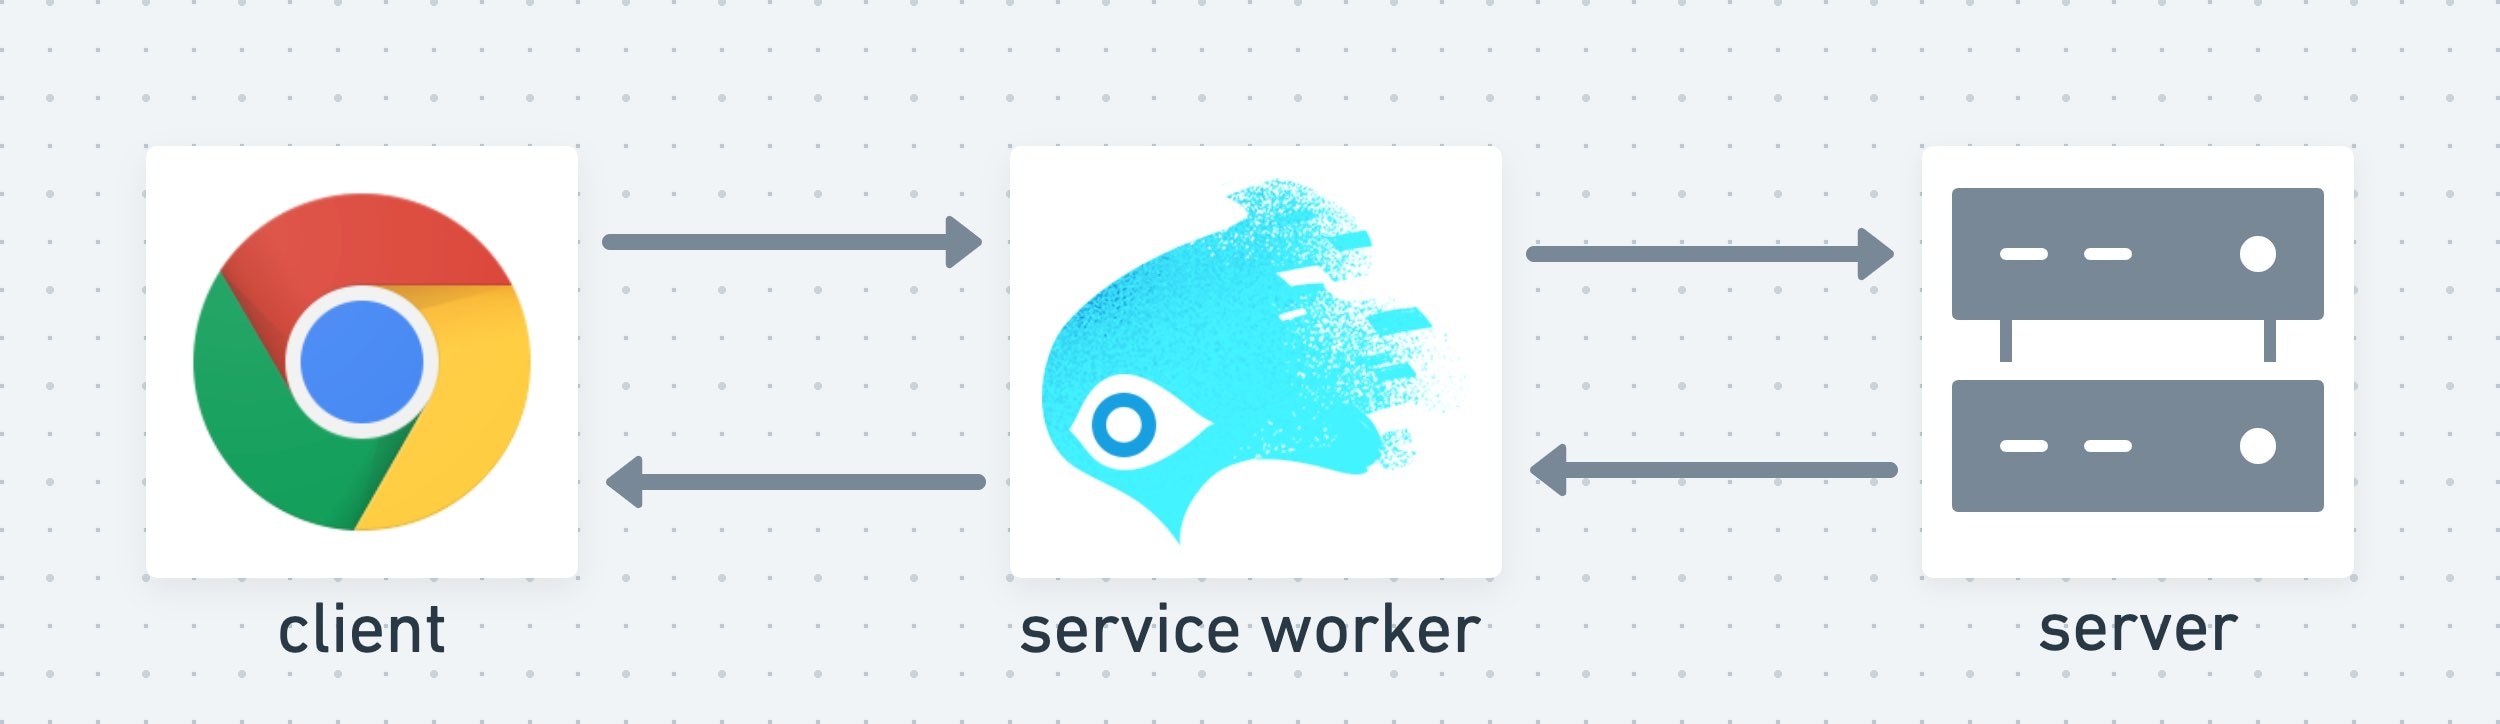 Service Worker ทำหน้าที่เป็นชั้นกลางระหว่างไคลเอ็นต์และเซิร์ฟเวอร์